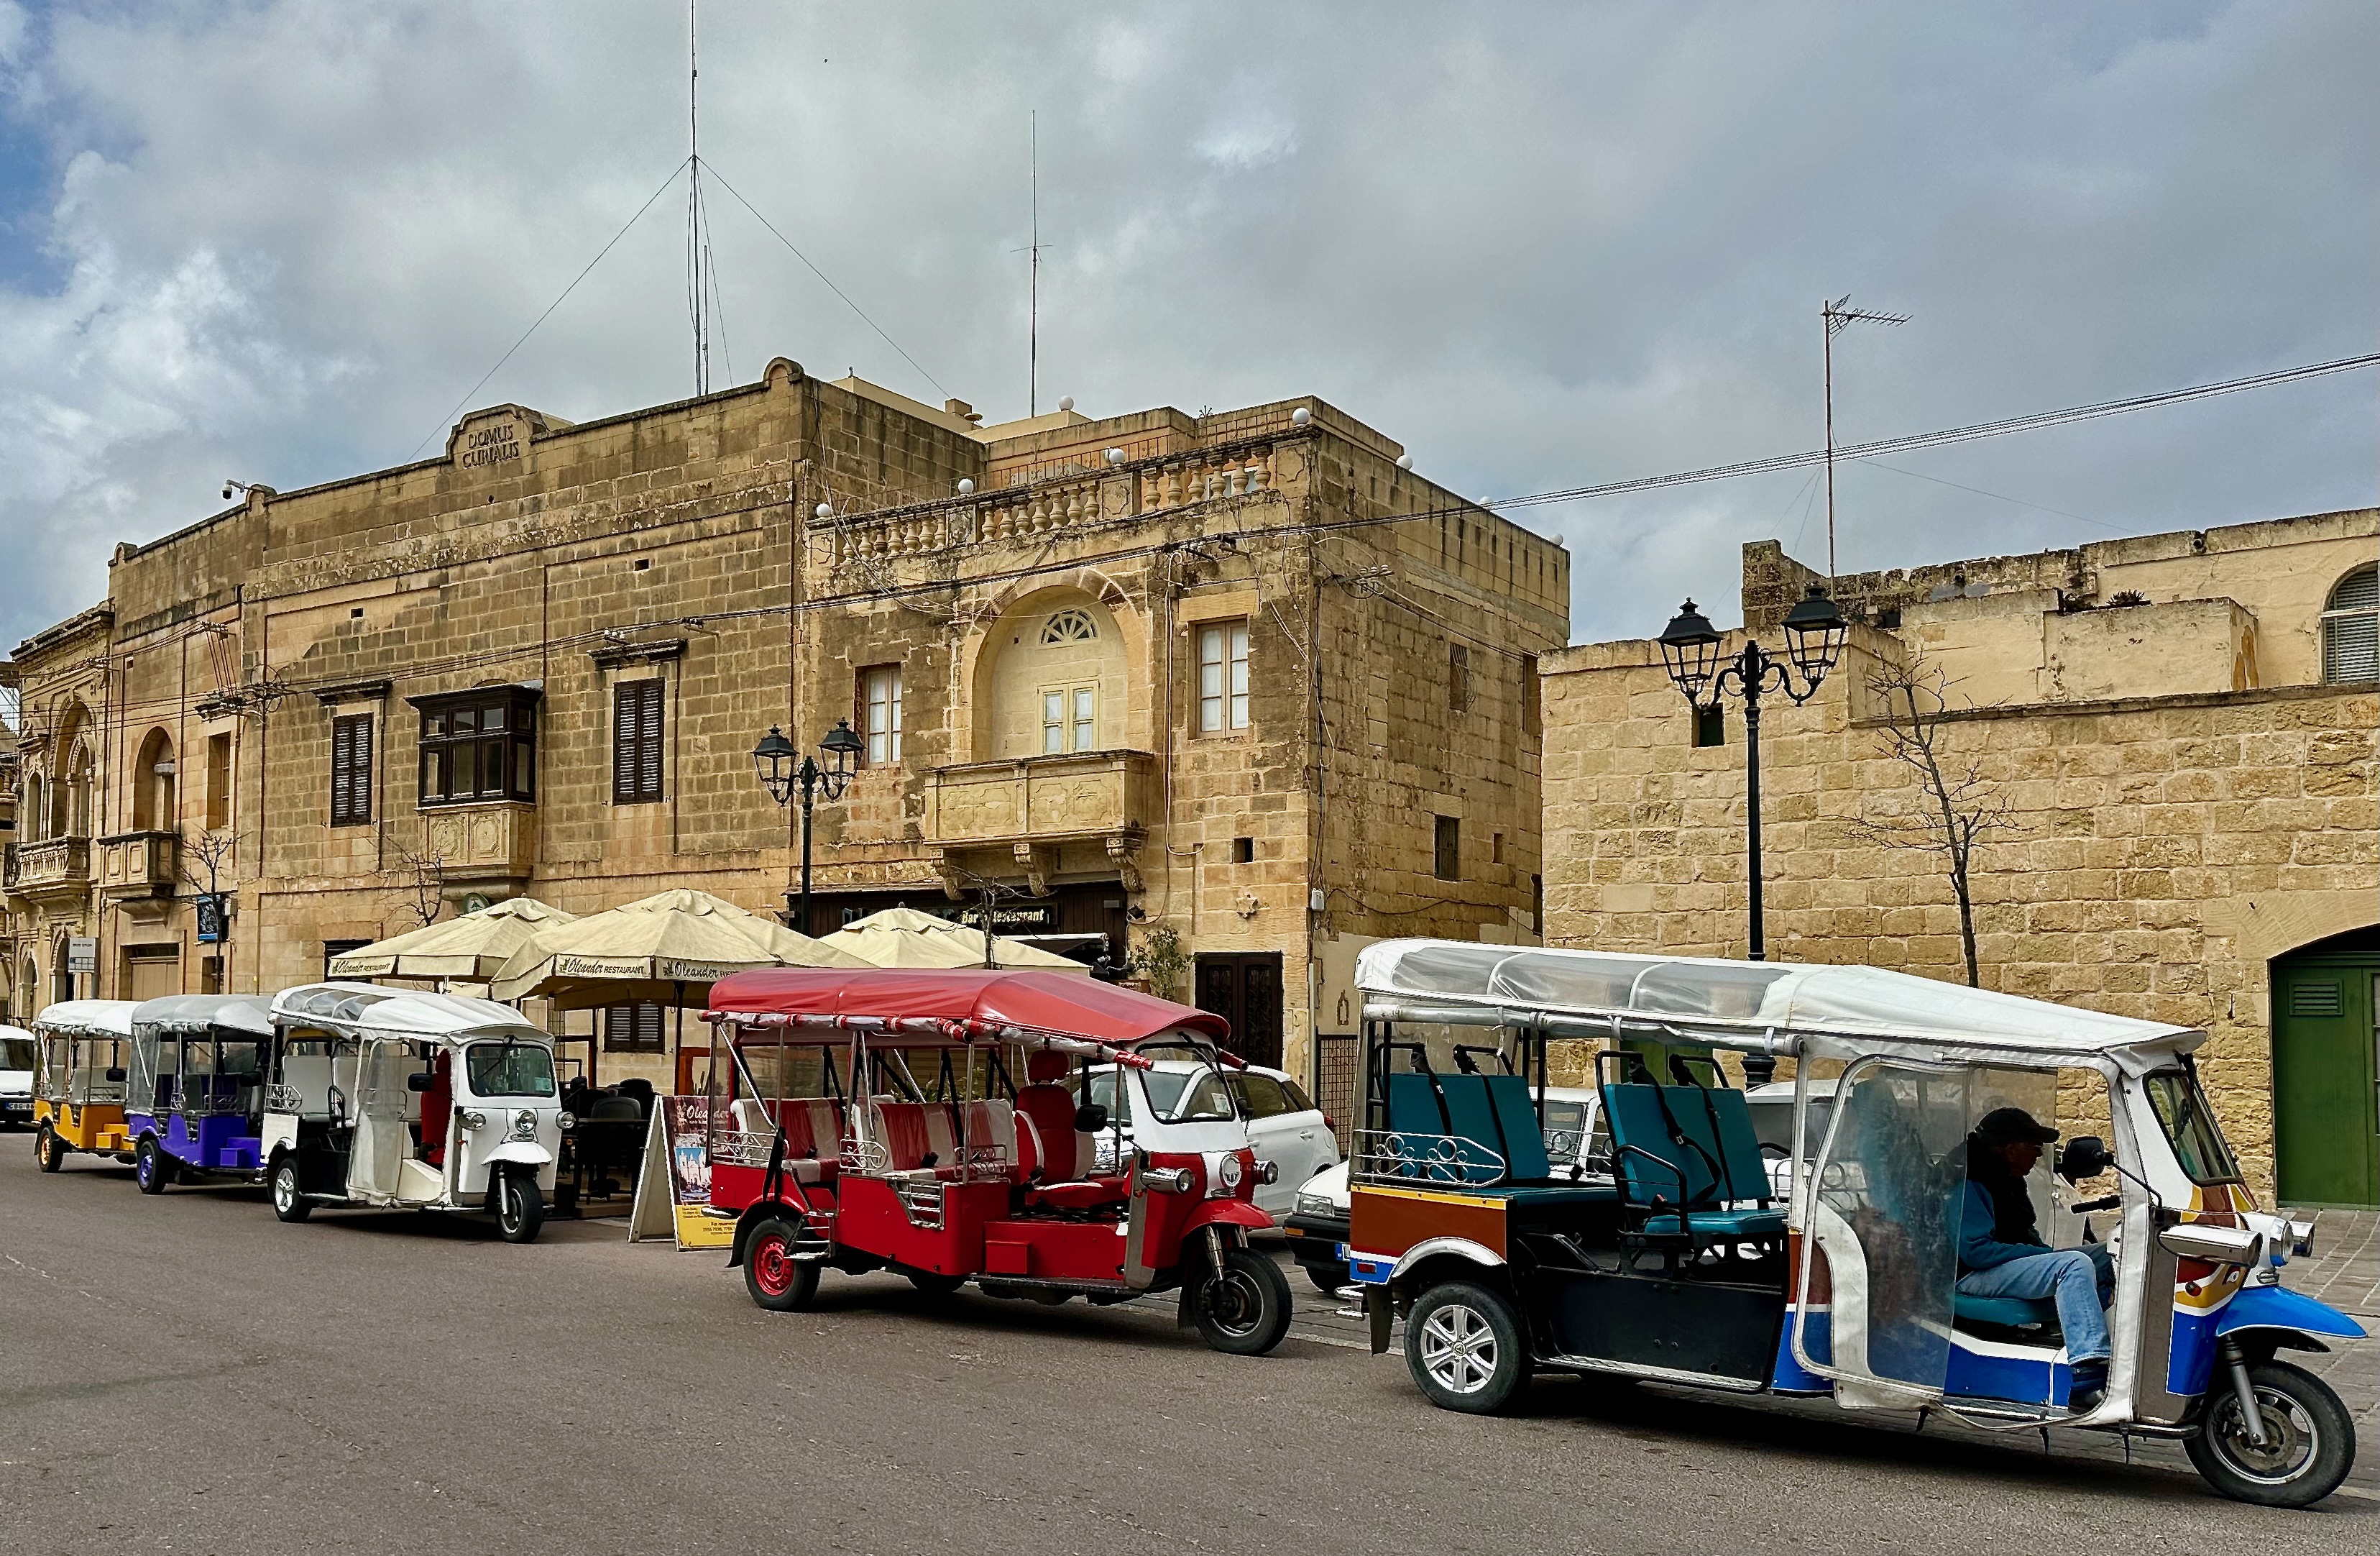 A Convoy of Tuk Tuks in Gozo, Malta